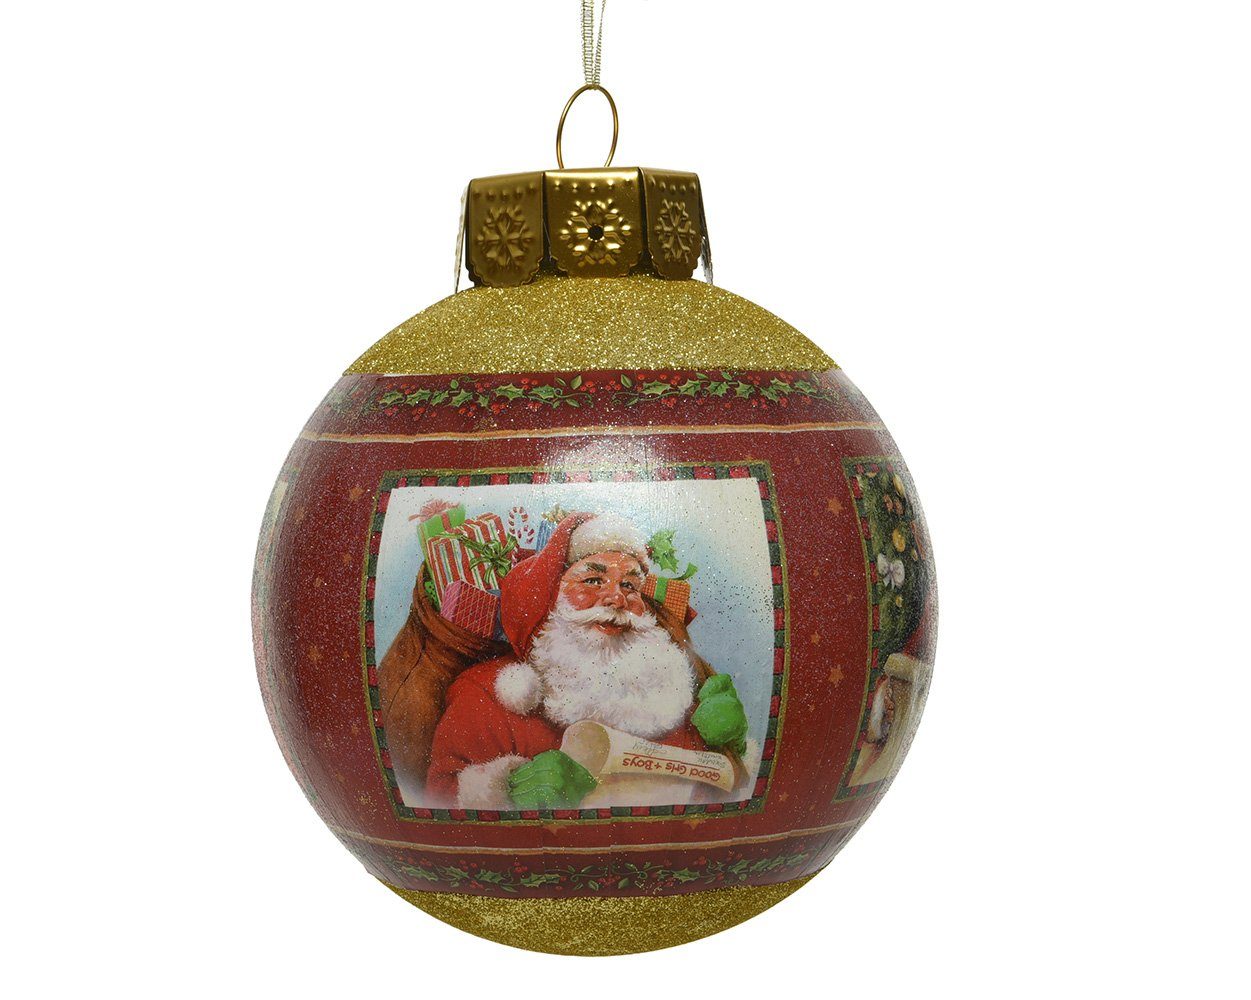 rot mit Weihnachtsmann 20cm season gold Kunststoff Motiven Weihnachtskugeln Decoris / decorations Weihnachtsbaumkugel,